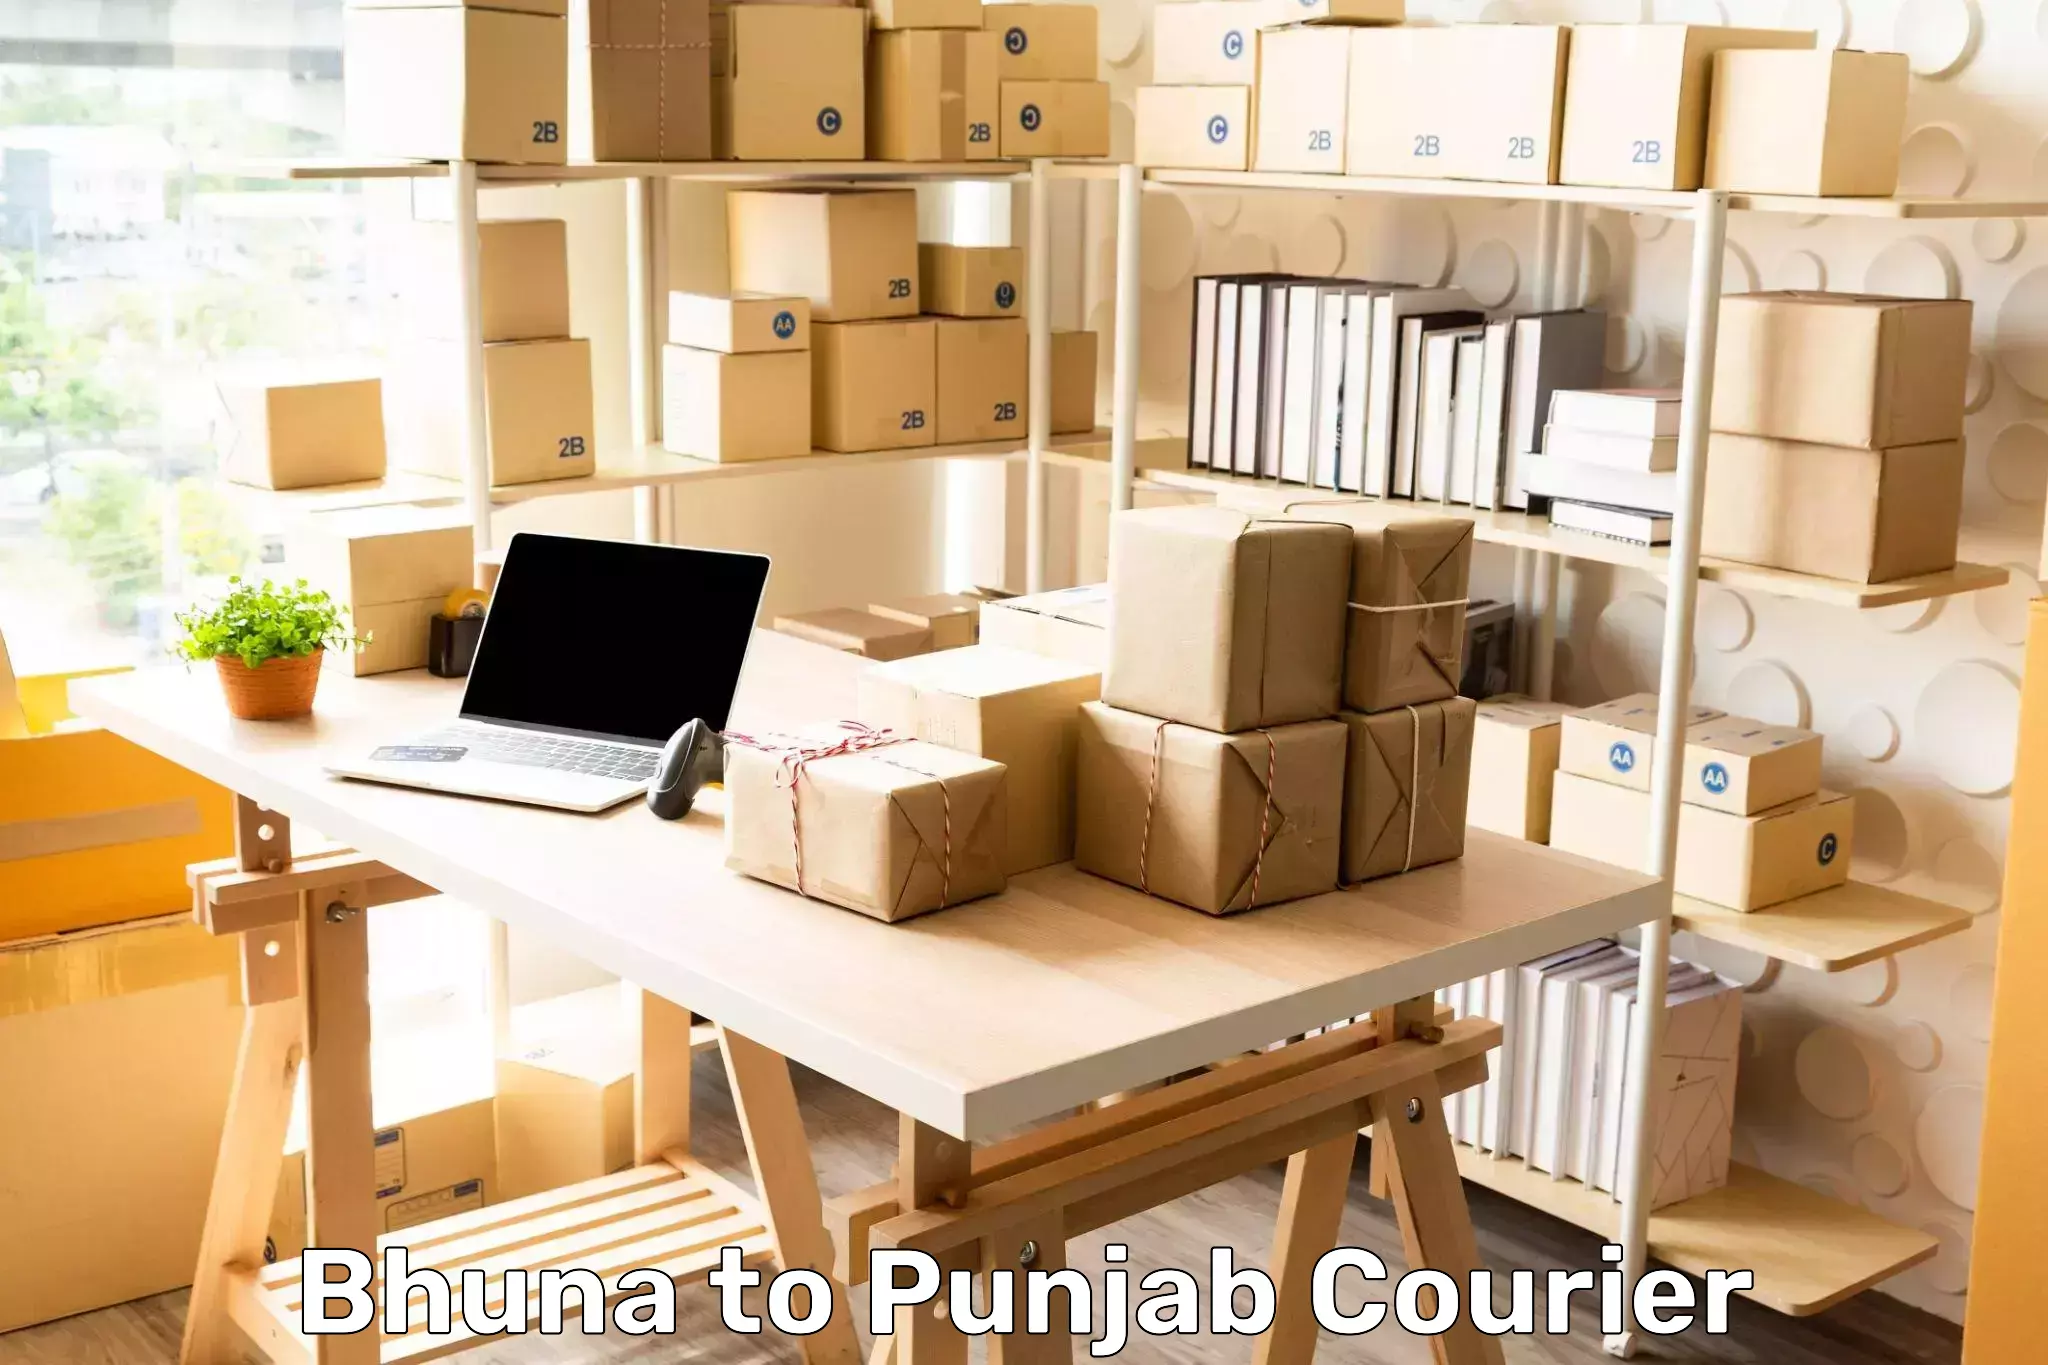 Efficient parcel tracking Bhuna to Central University of Punjab Bathinda